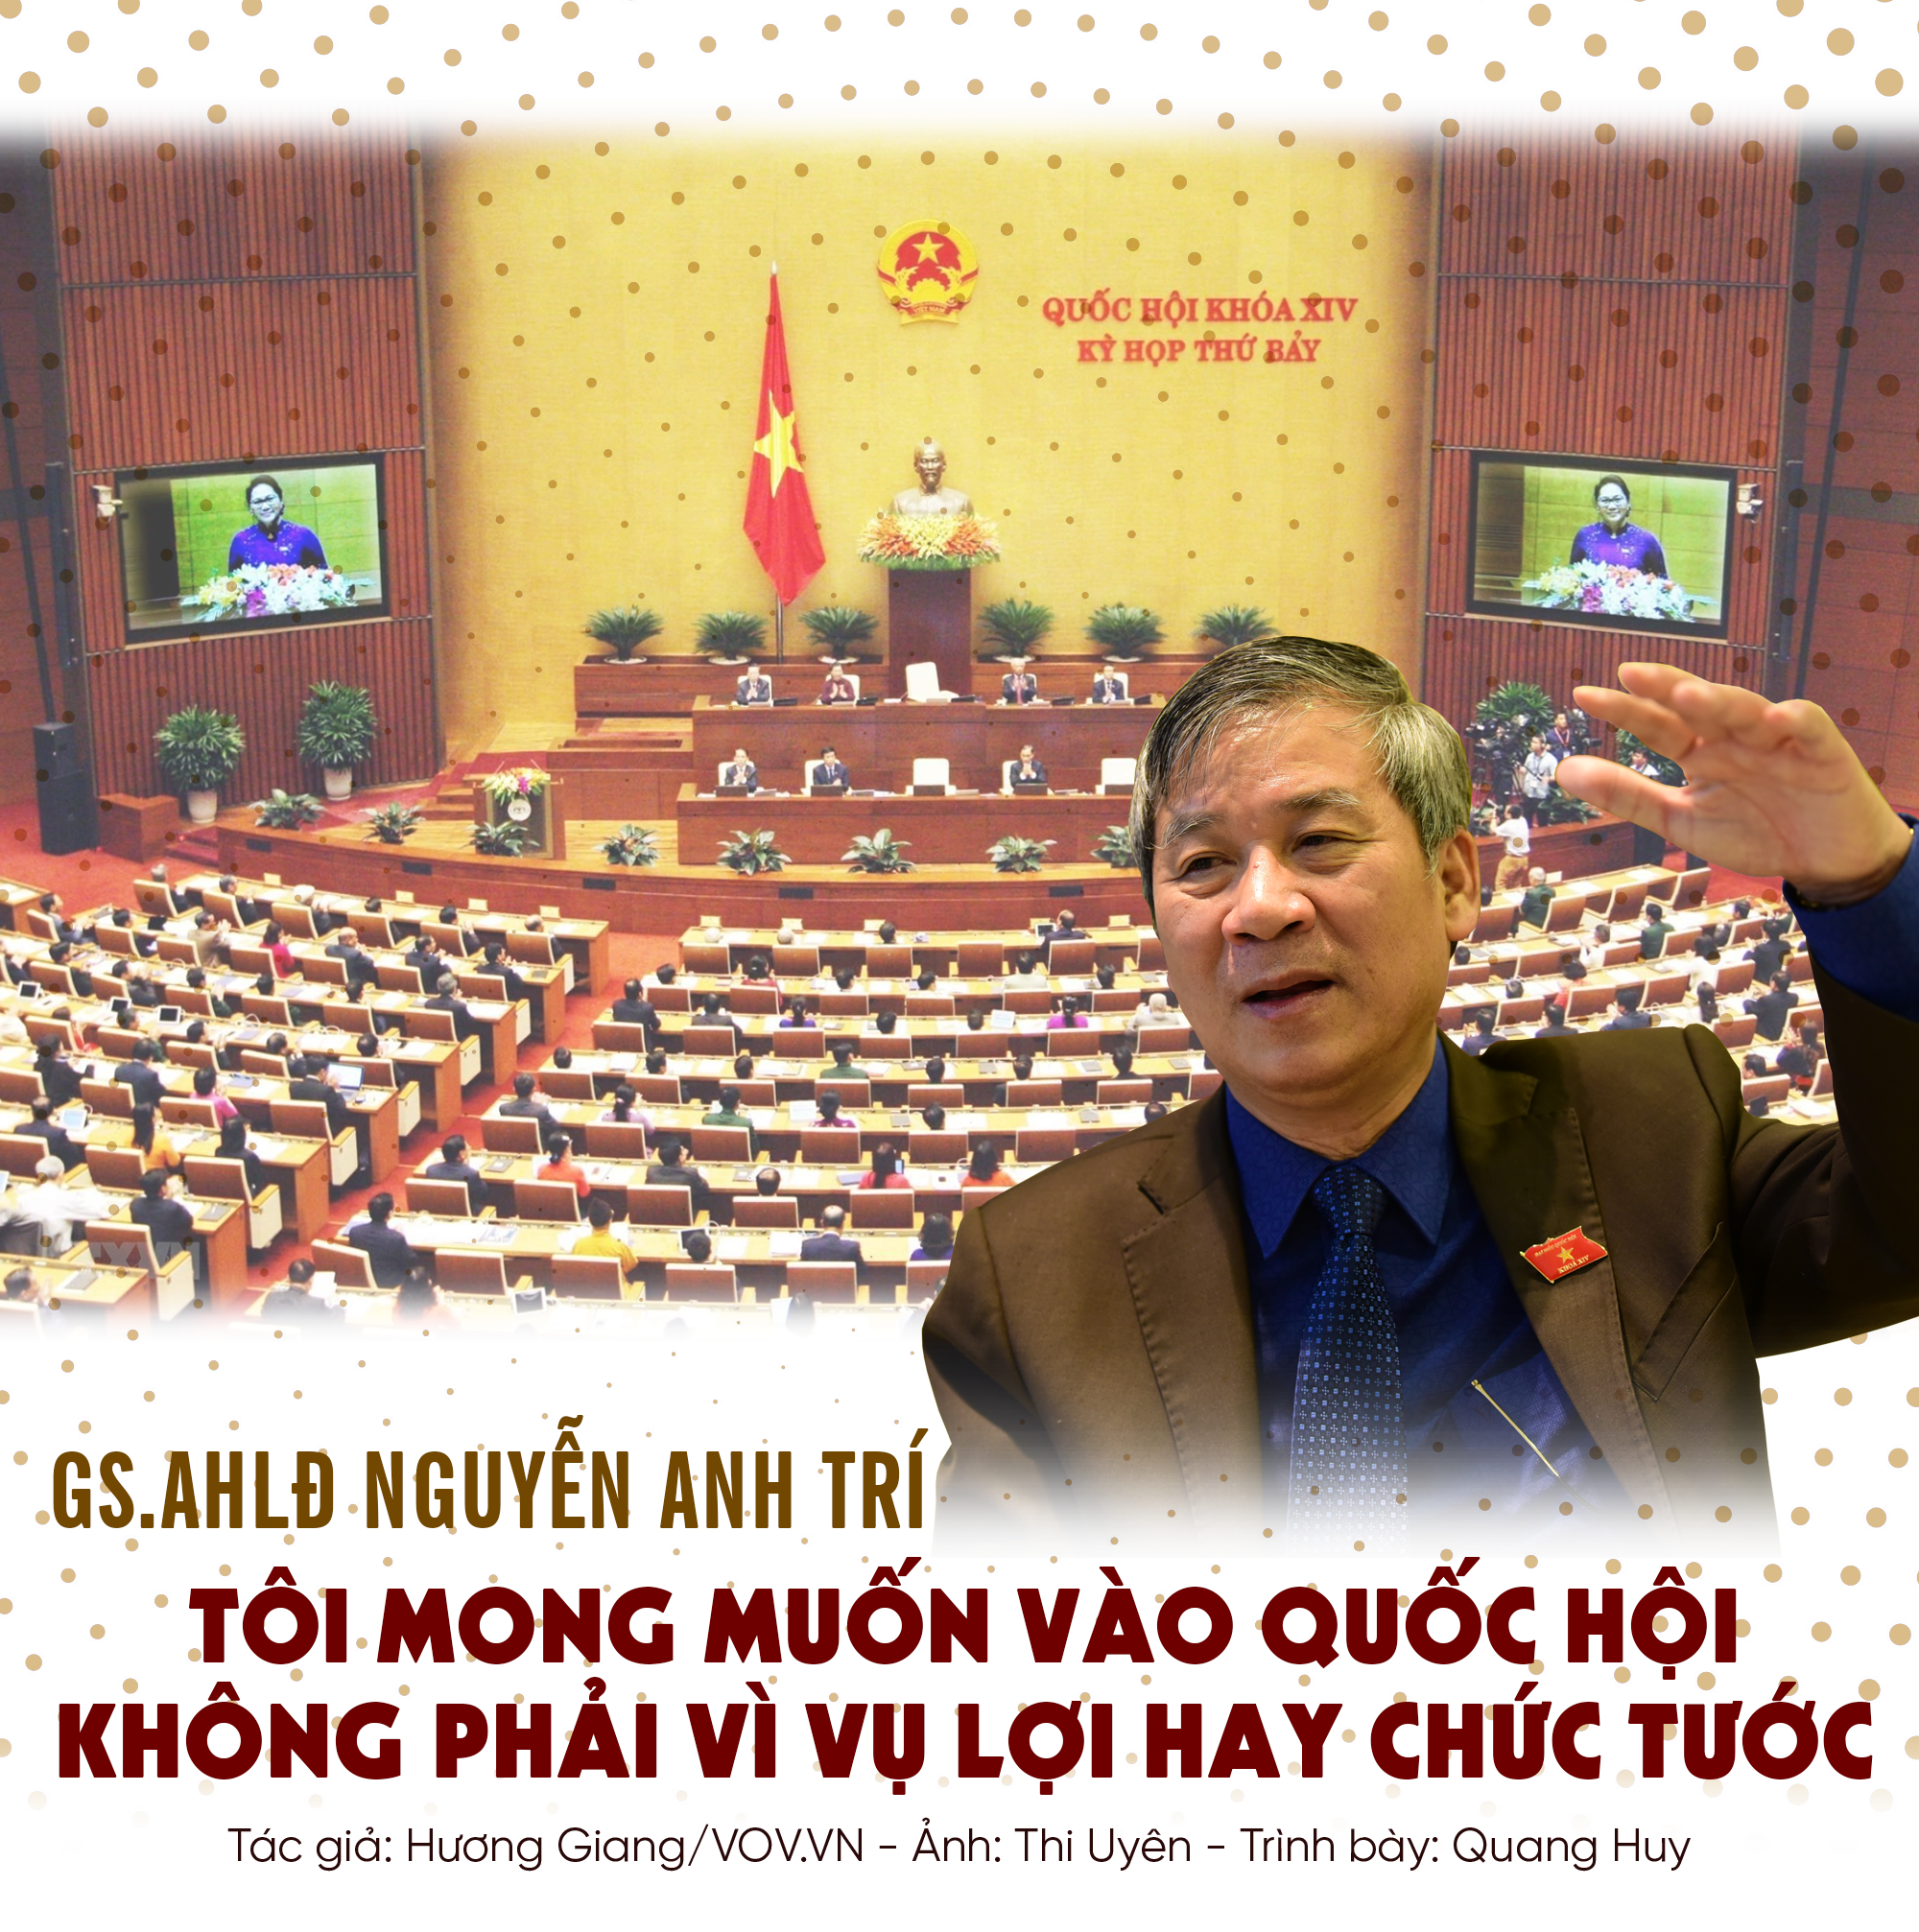 GS. AHLĐ Nguyễn Anh Trí: “Tôi mong muốn vào Quốc hội không phải vì vụ lợi hay chức tước” - Ảnh 1.